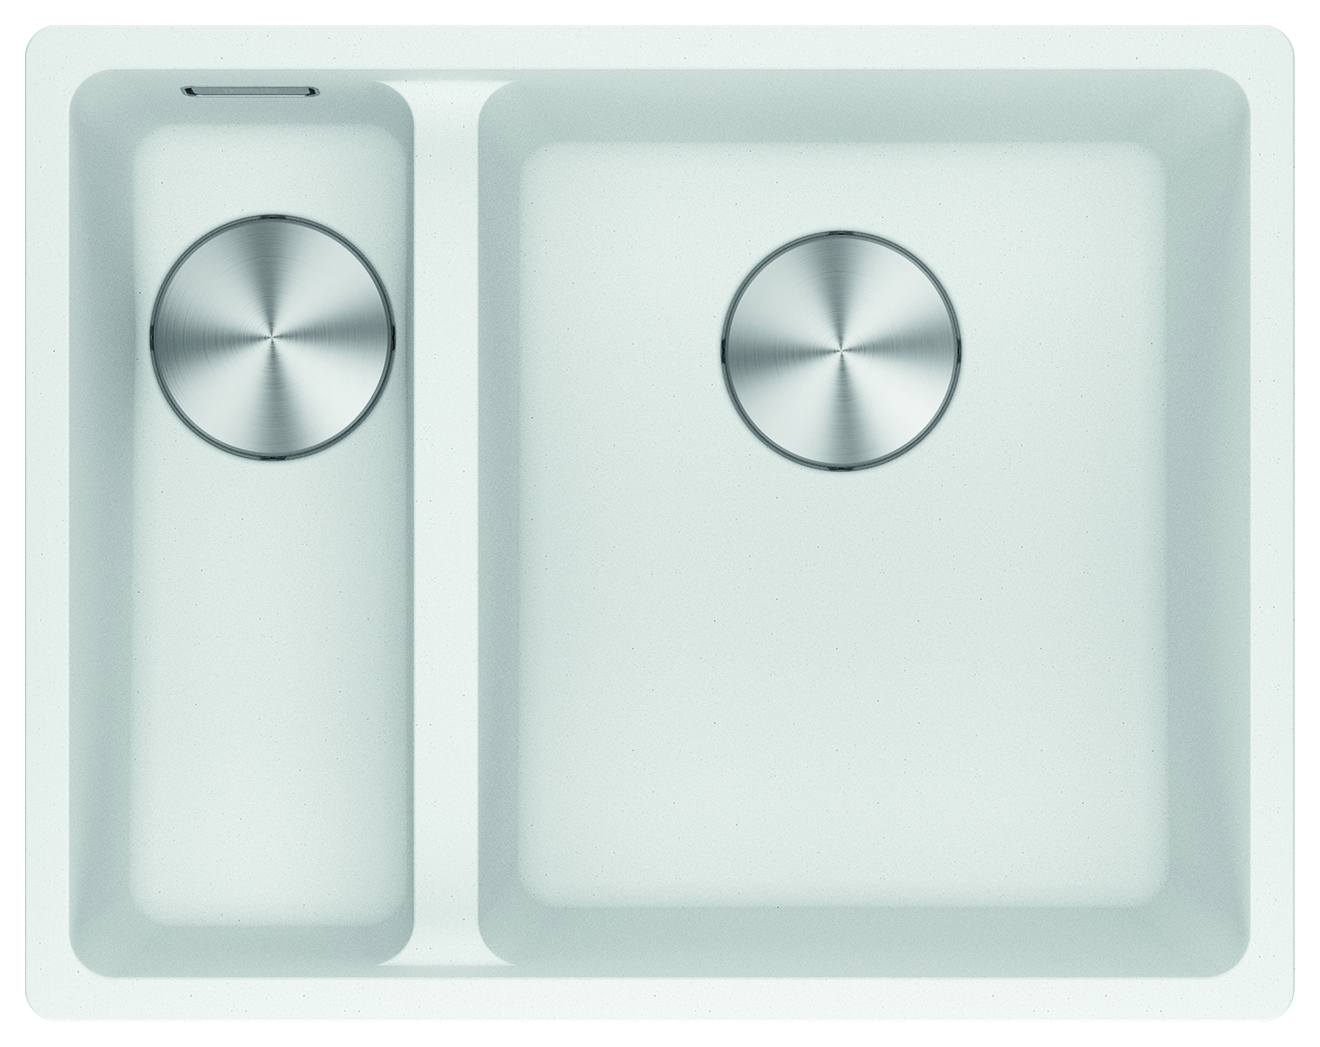 Franke Maris Granite 1.5 Bowl Undermount Kitchen Sink LH - White